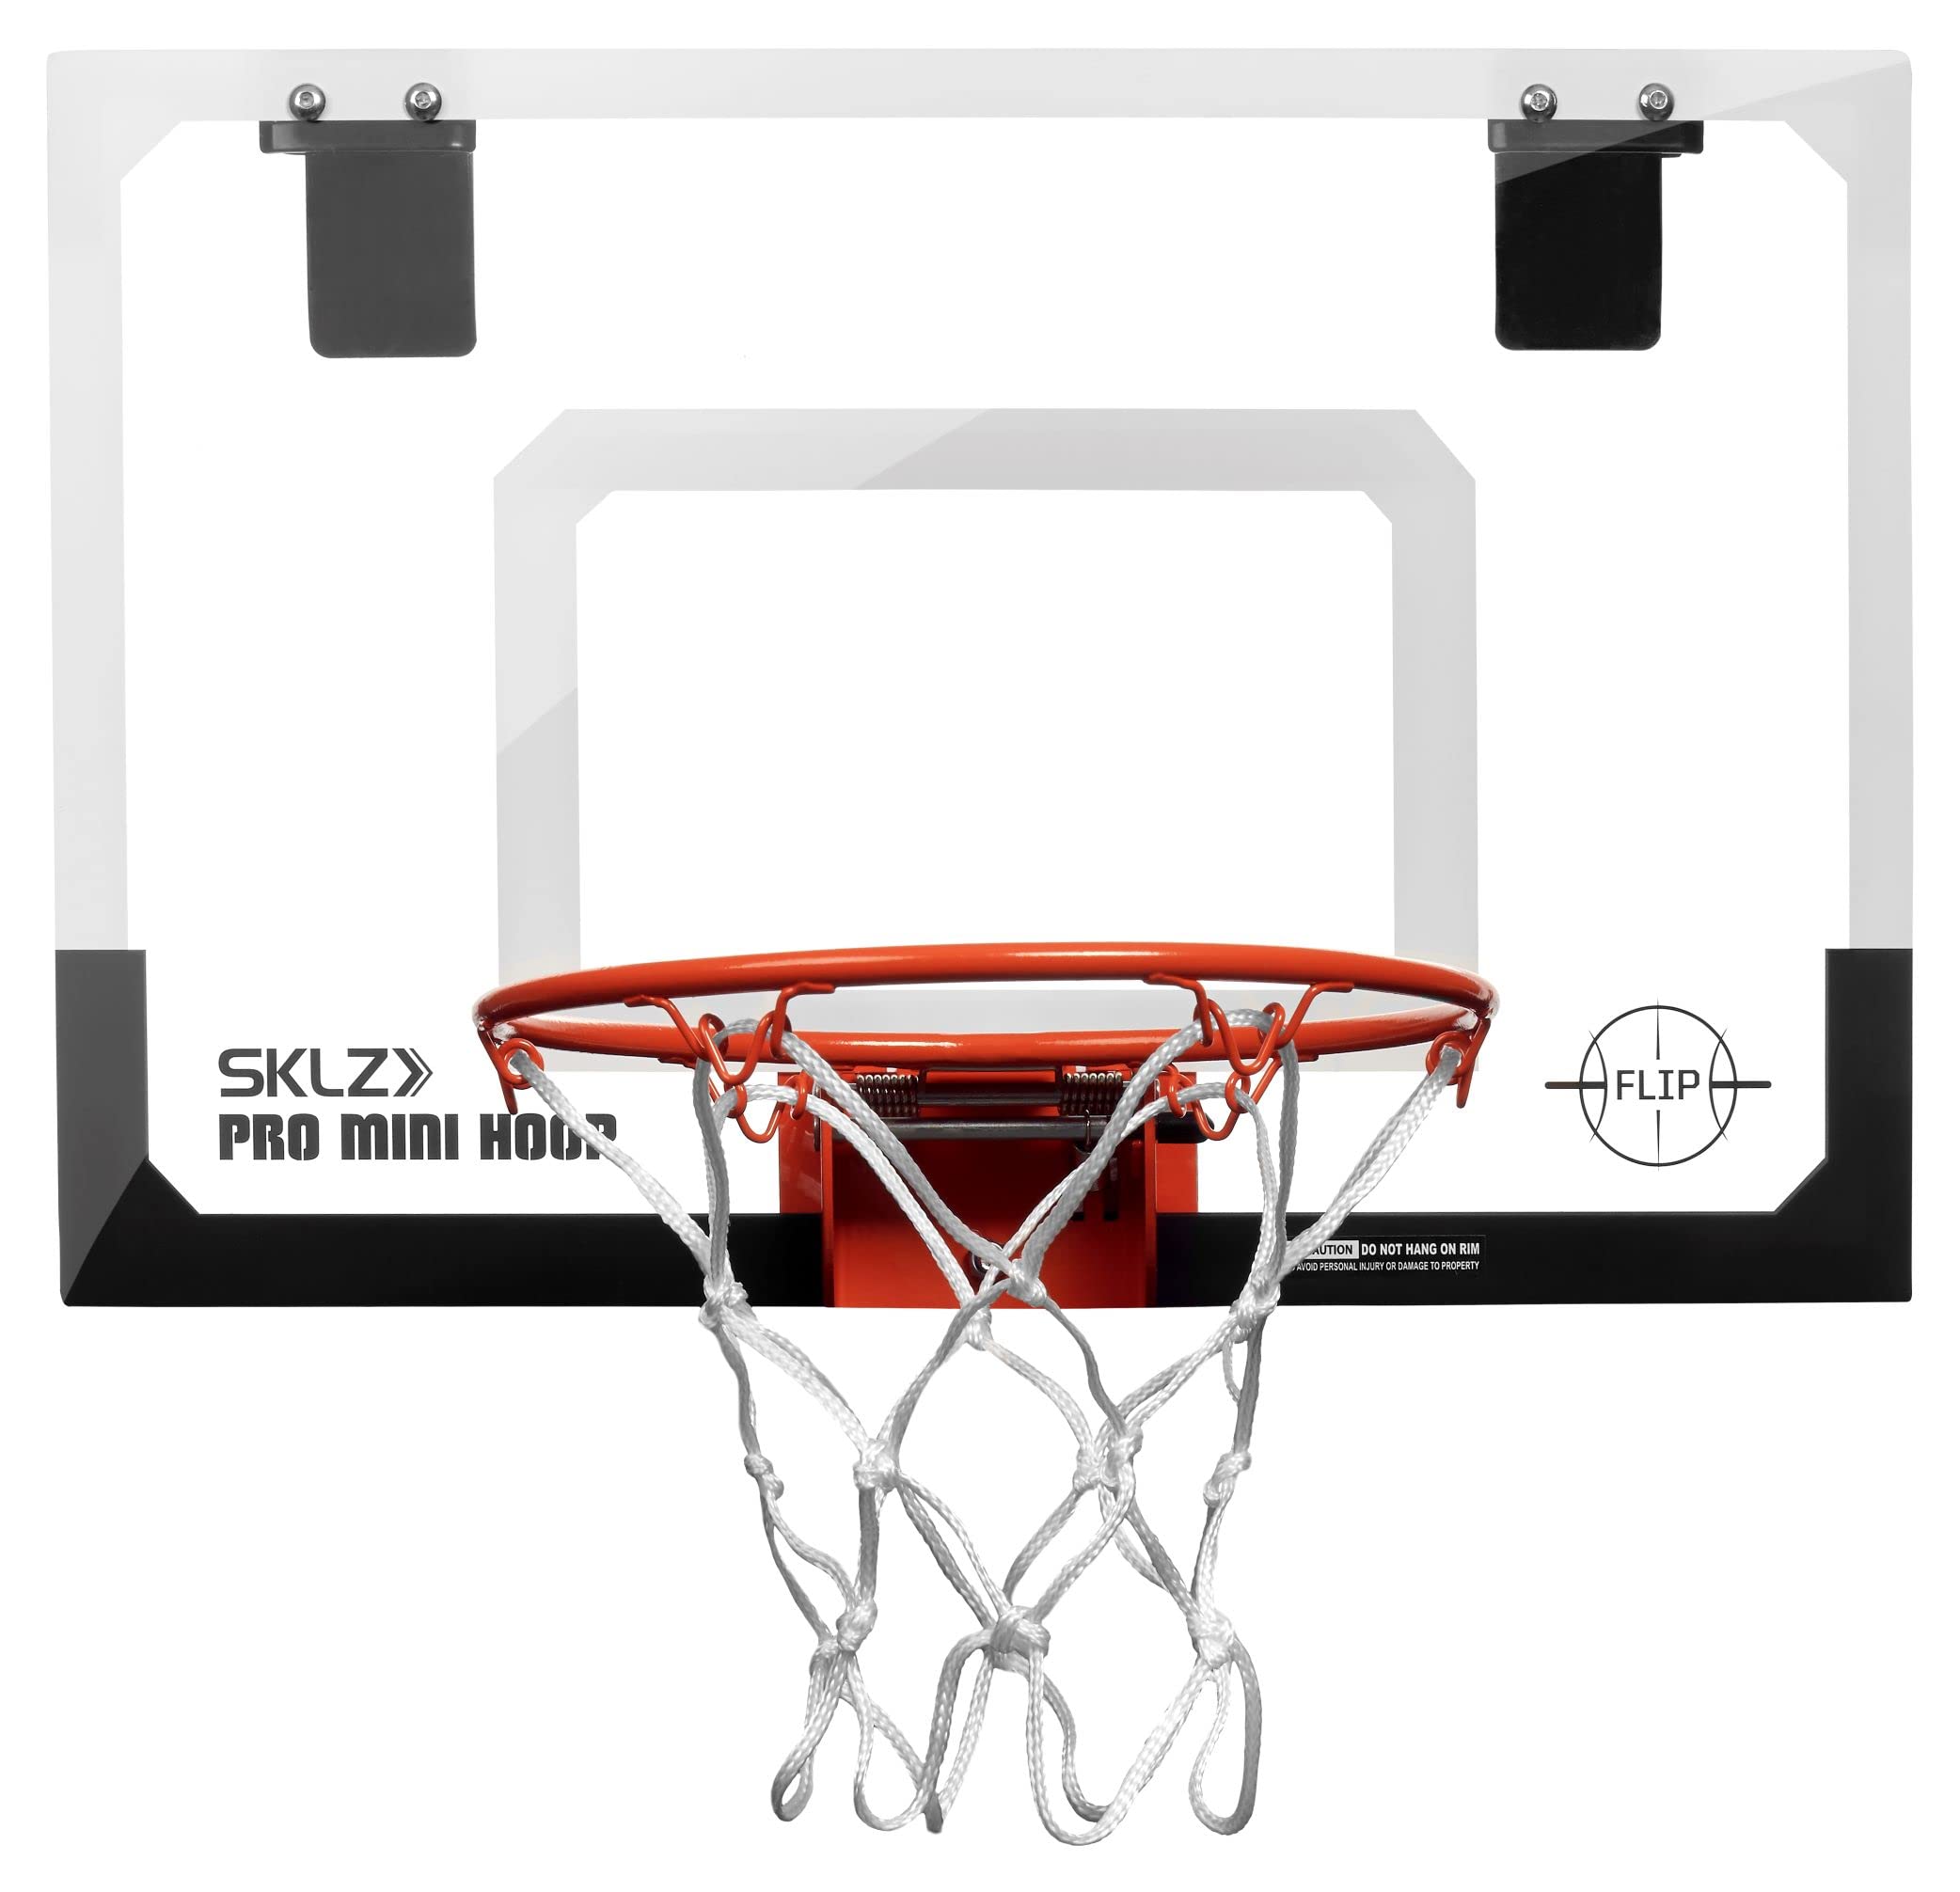 SKLZ Mini panier de basket Pro